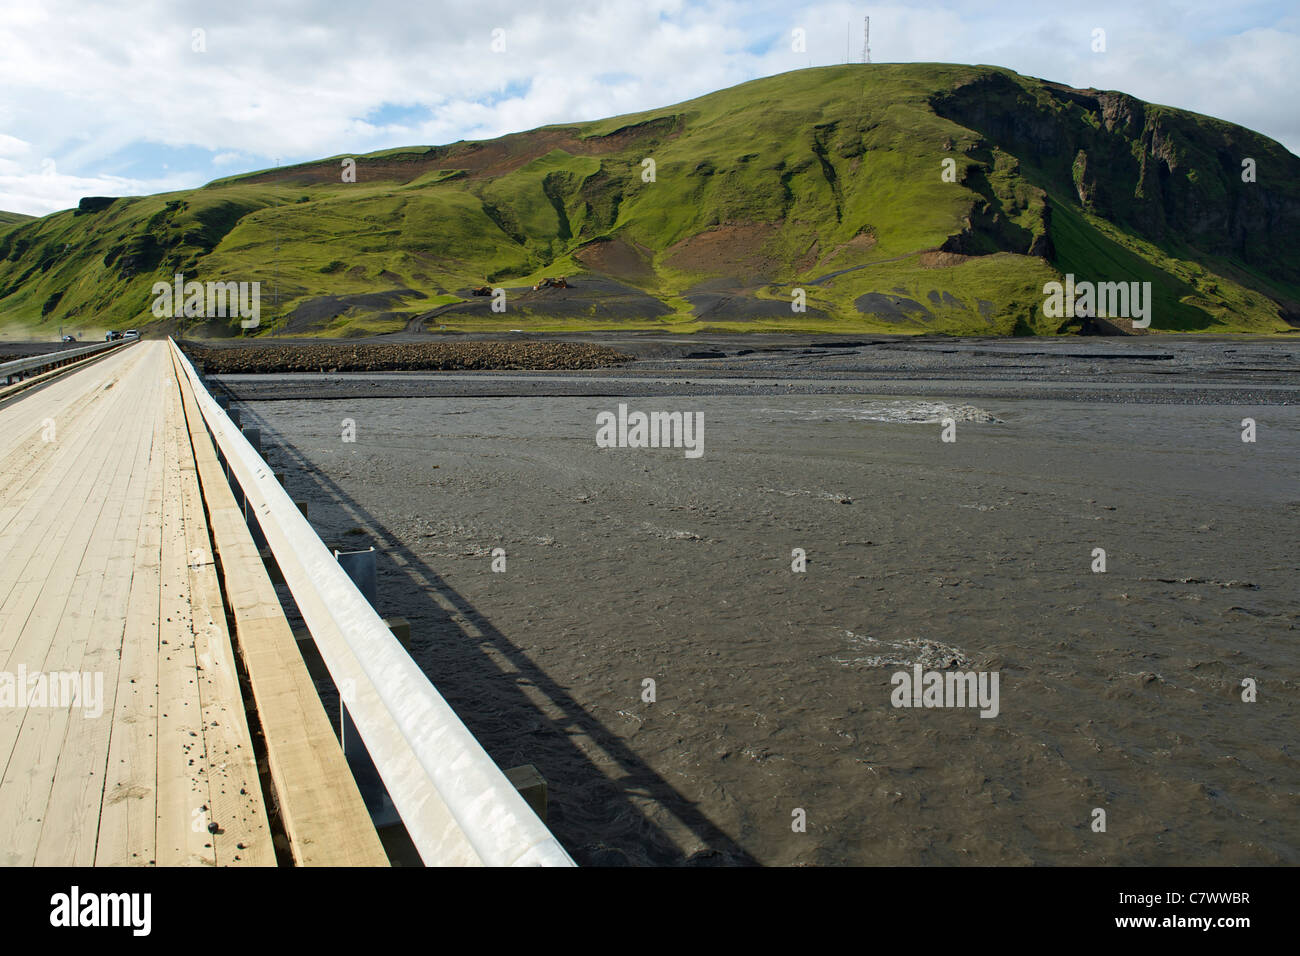 Ponte sul Skeidararsandur, un massiccio glaciale di pianura alluvionale del ghiacciaio Vatnajokull nel sud-est dell'Islanda. Foto Stock